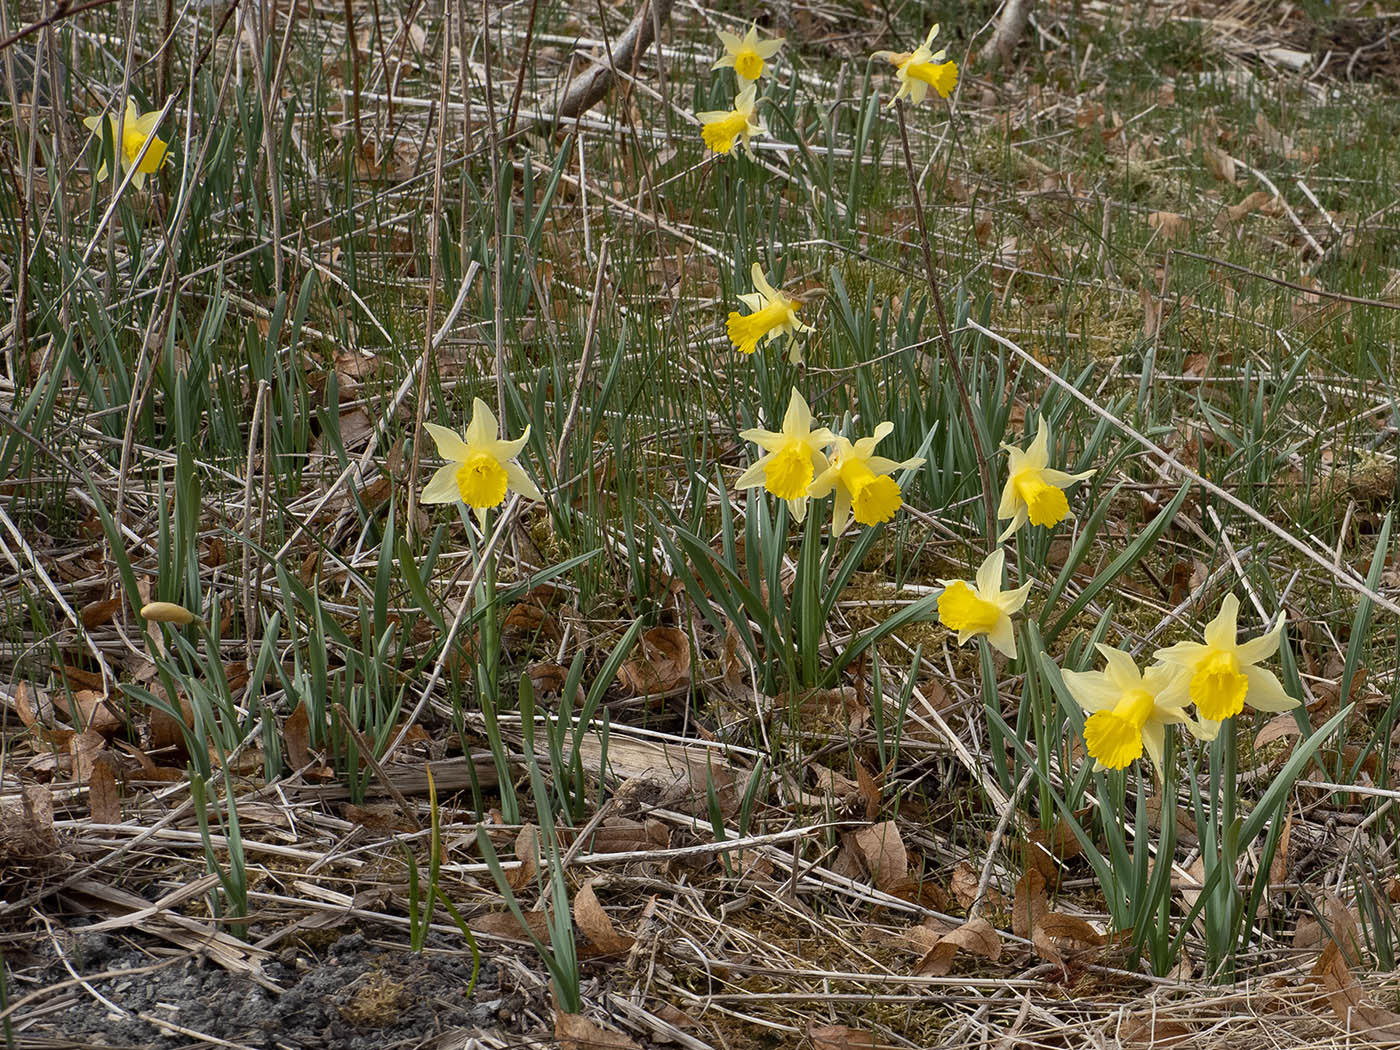 Нарцисс ложный (Narcissus pseudonarcissus) в природном парке G?rv?ln, Стокгольм, апрель 2020 года. Автор фото: Сутормина Марина